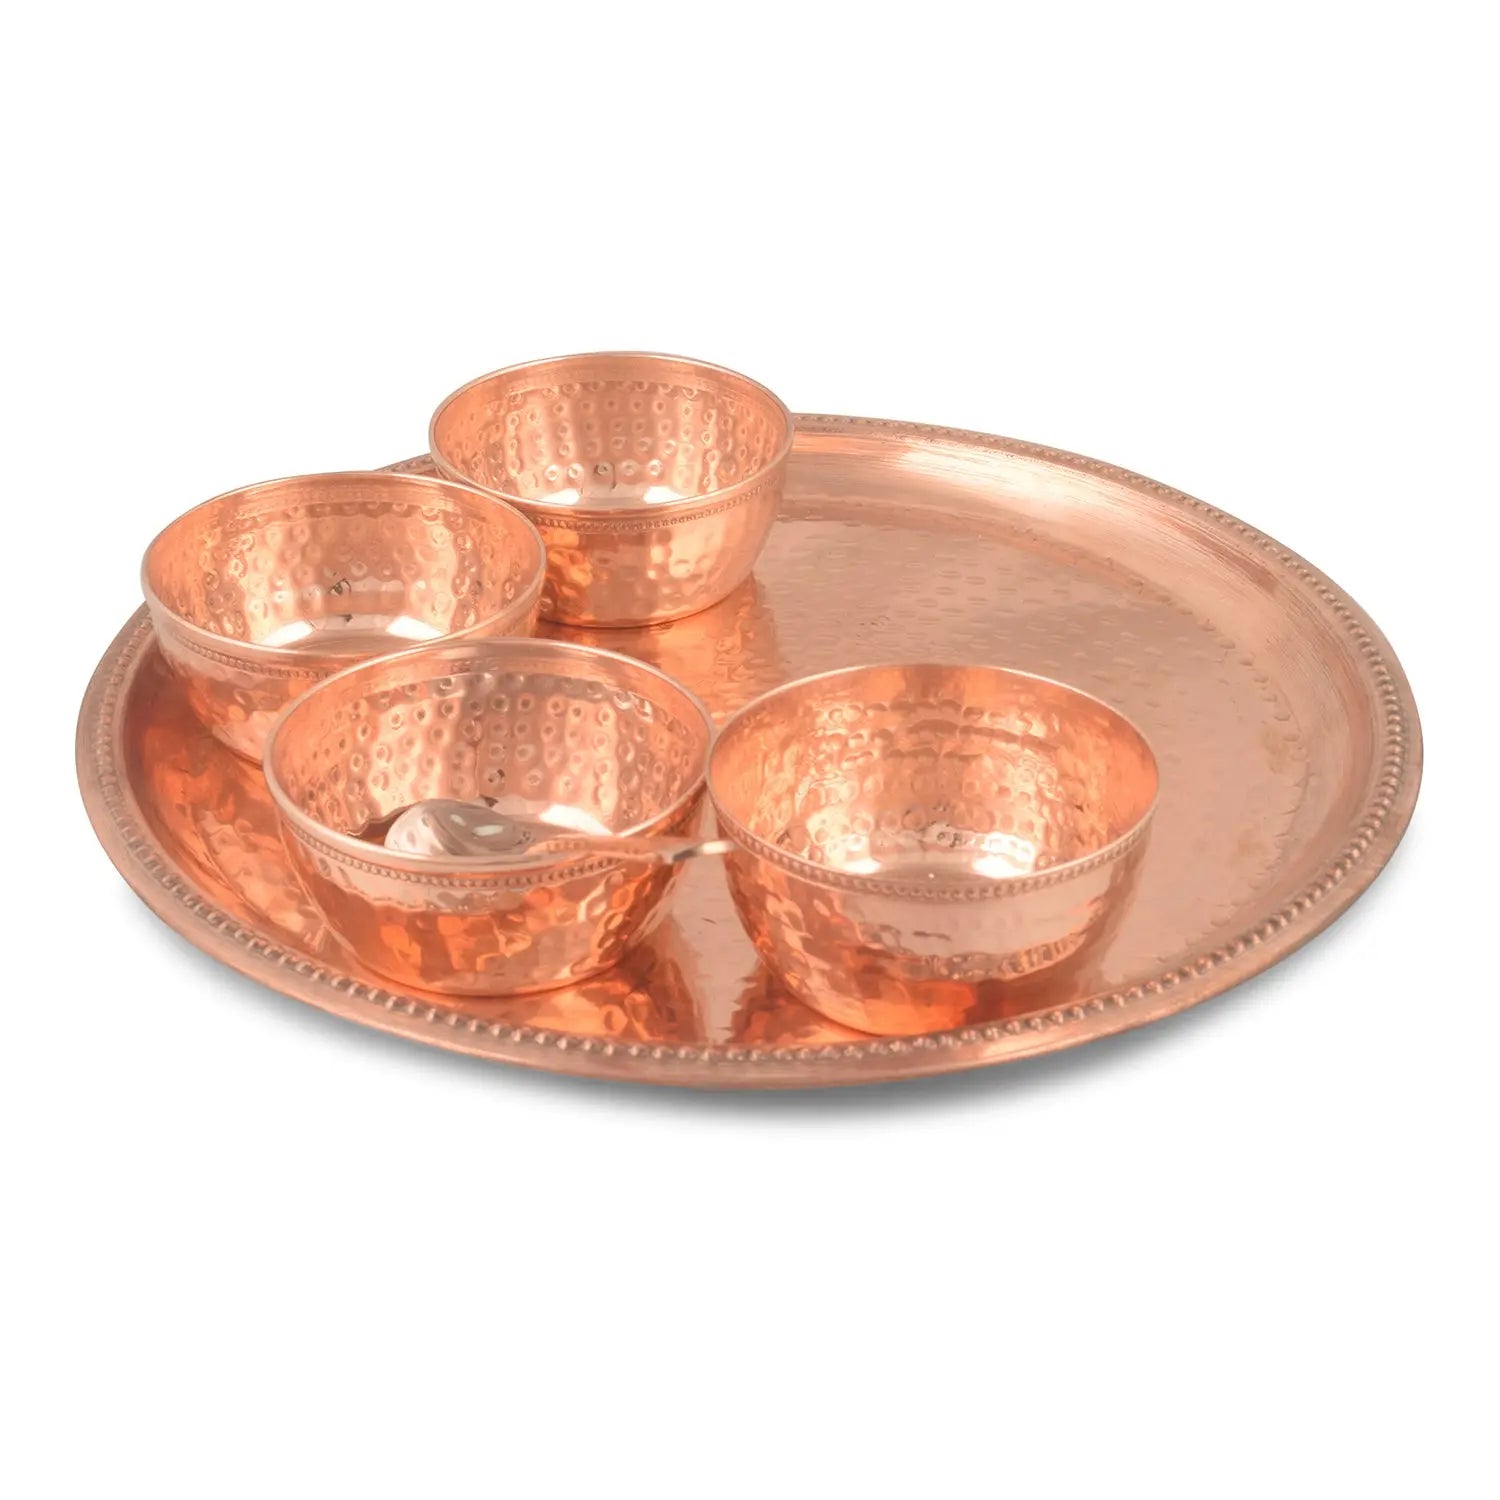 Pure Copper Plate Set 6 pcs W/O Glass - CROCKERY WALA AND COMPANY 